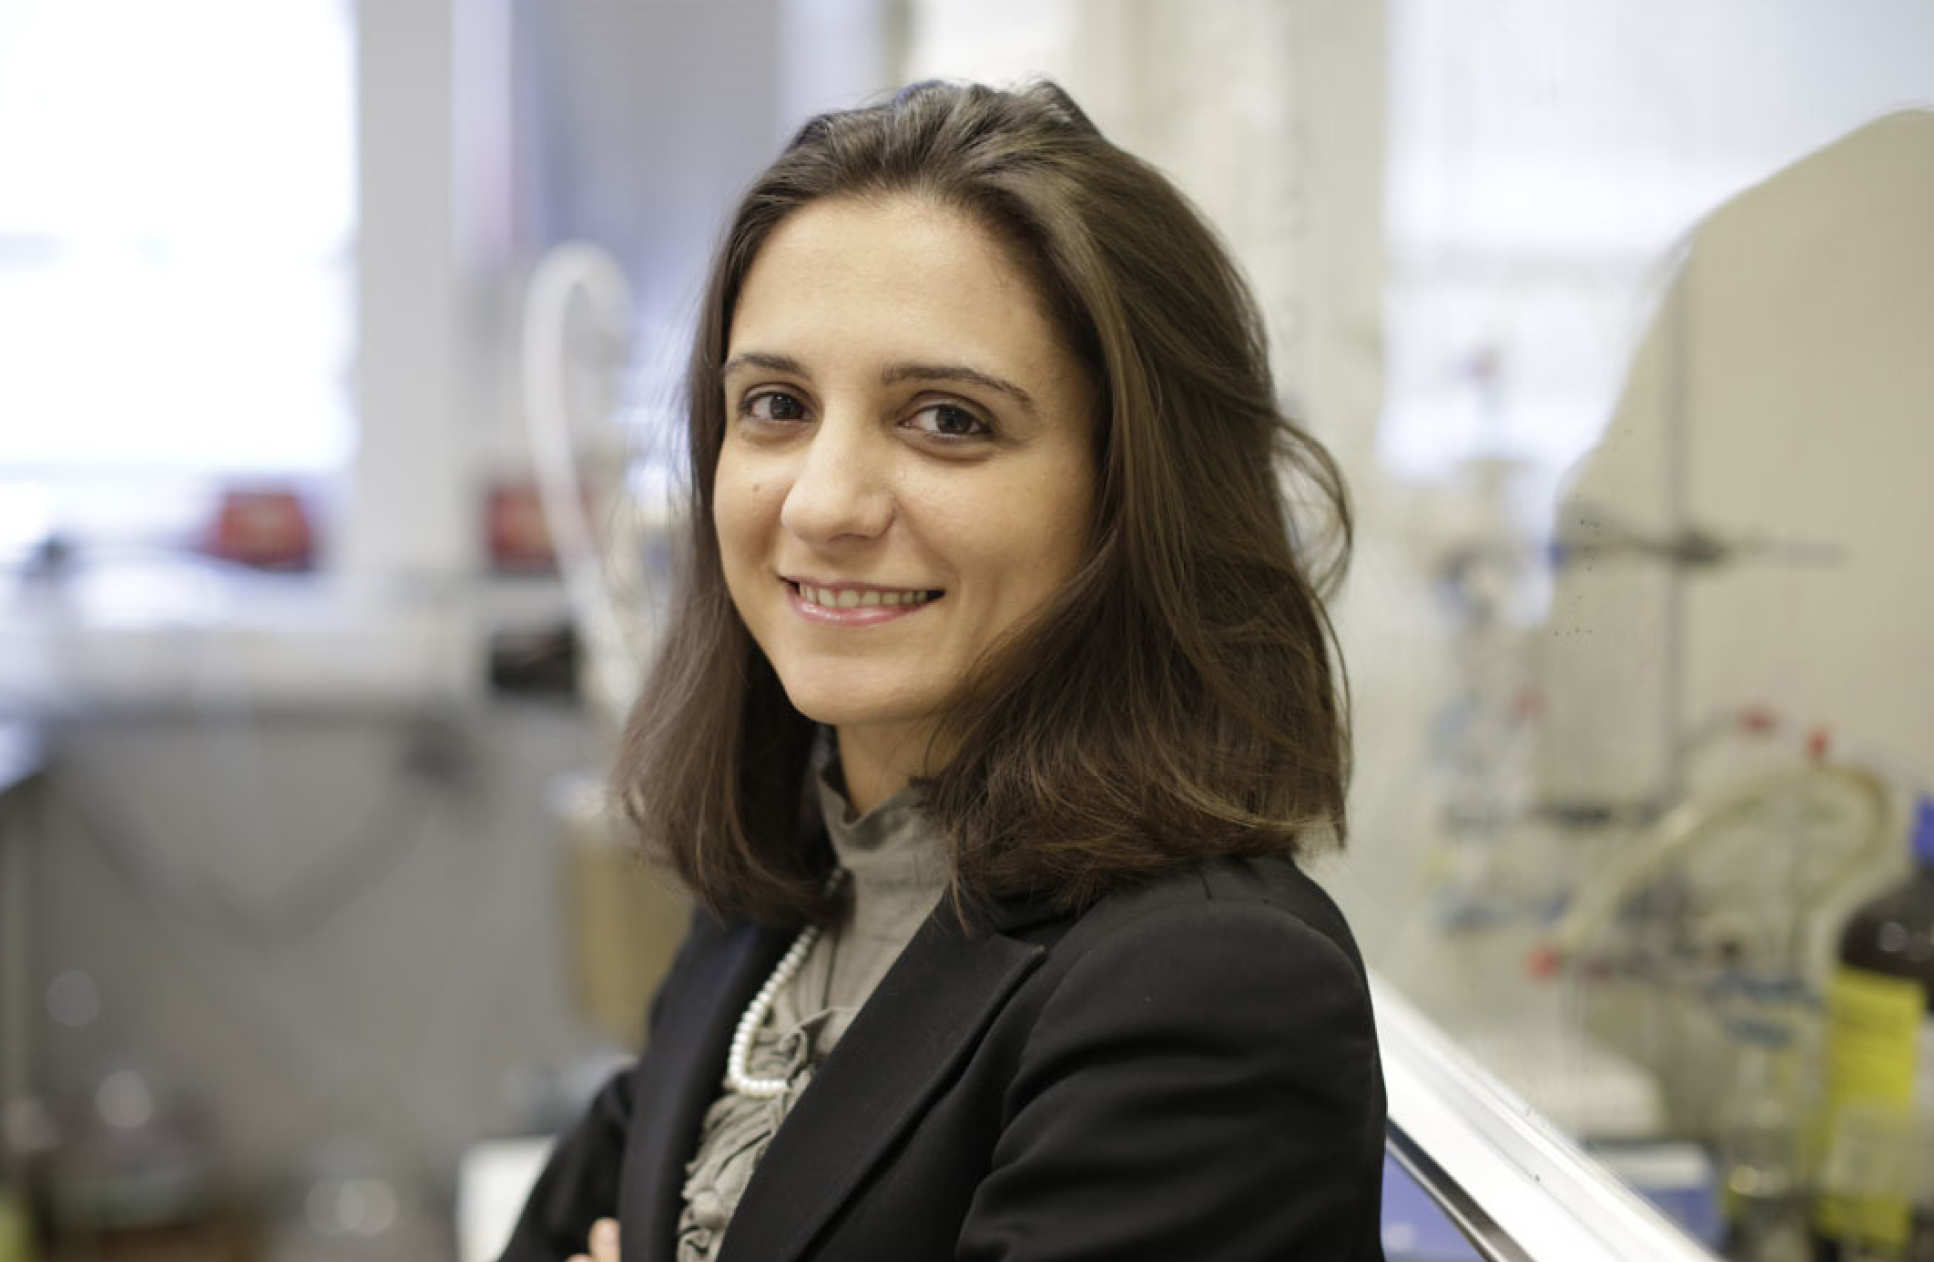 Dr Cecilia Mattevi